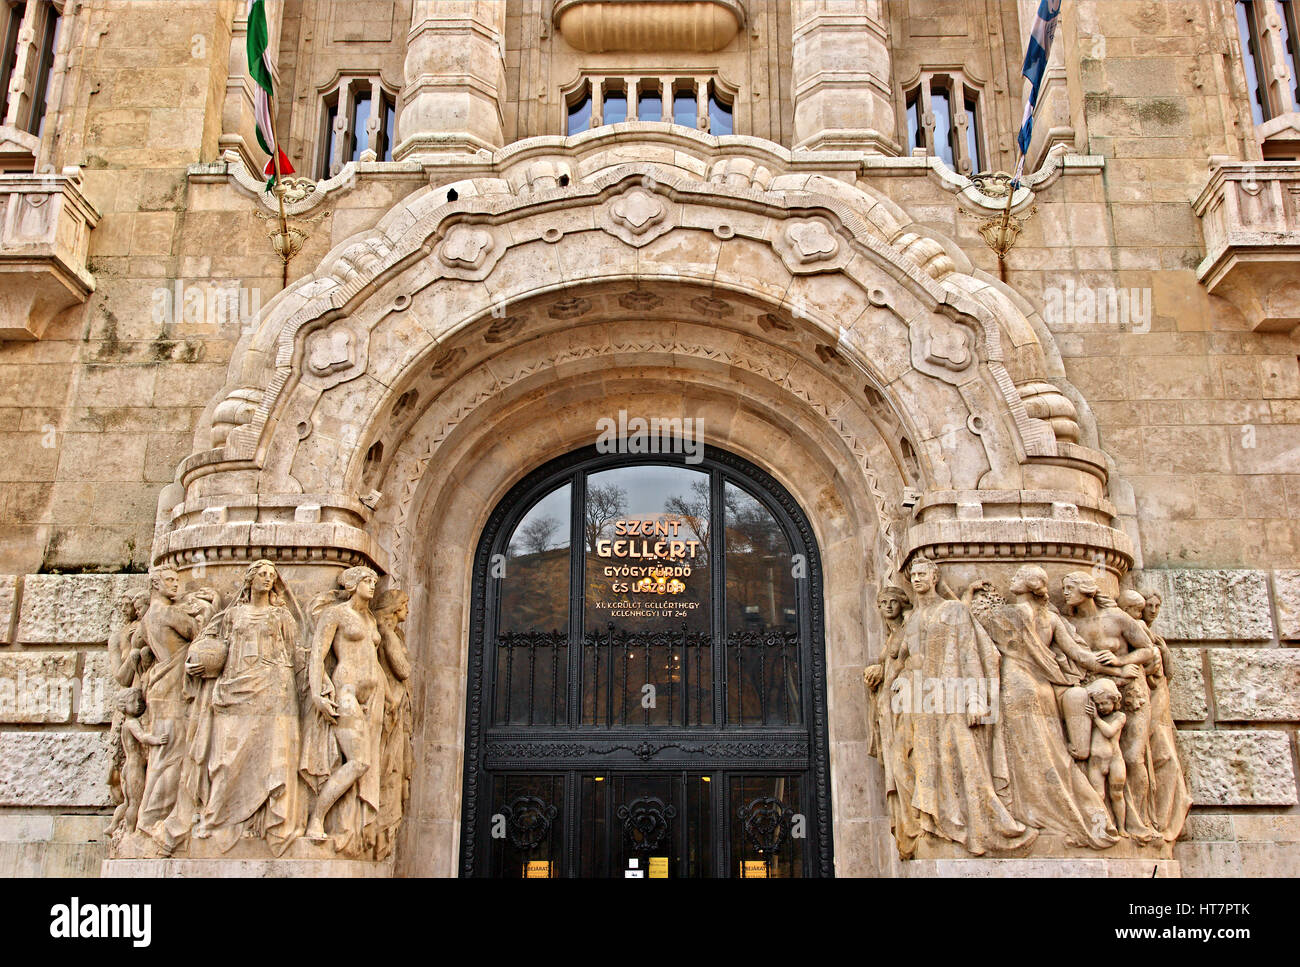 L'entrée des célèbres thermes de Gellért, partie de l'hôtel Gellért, Buda, Budapest, Hongrie Banque D'Images